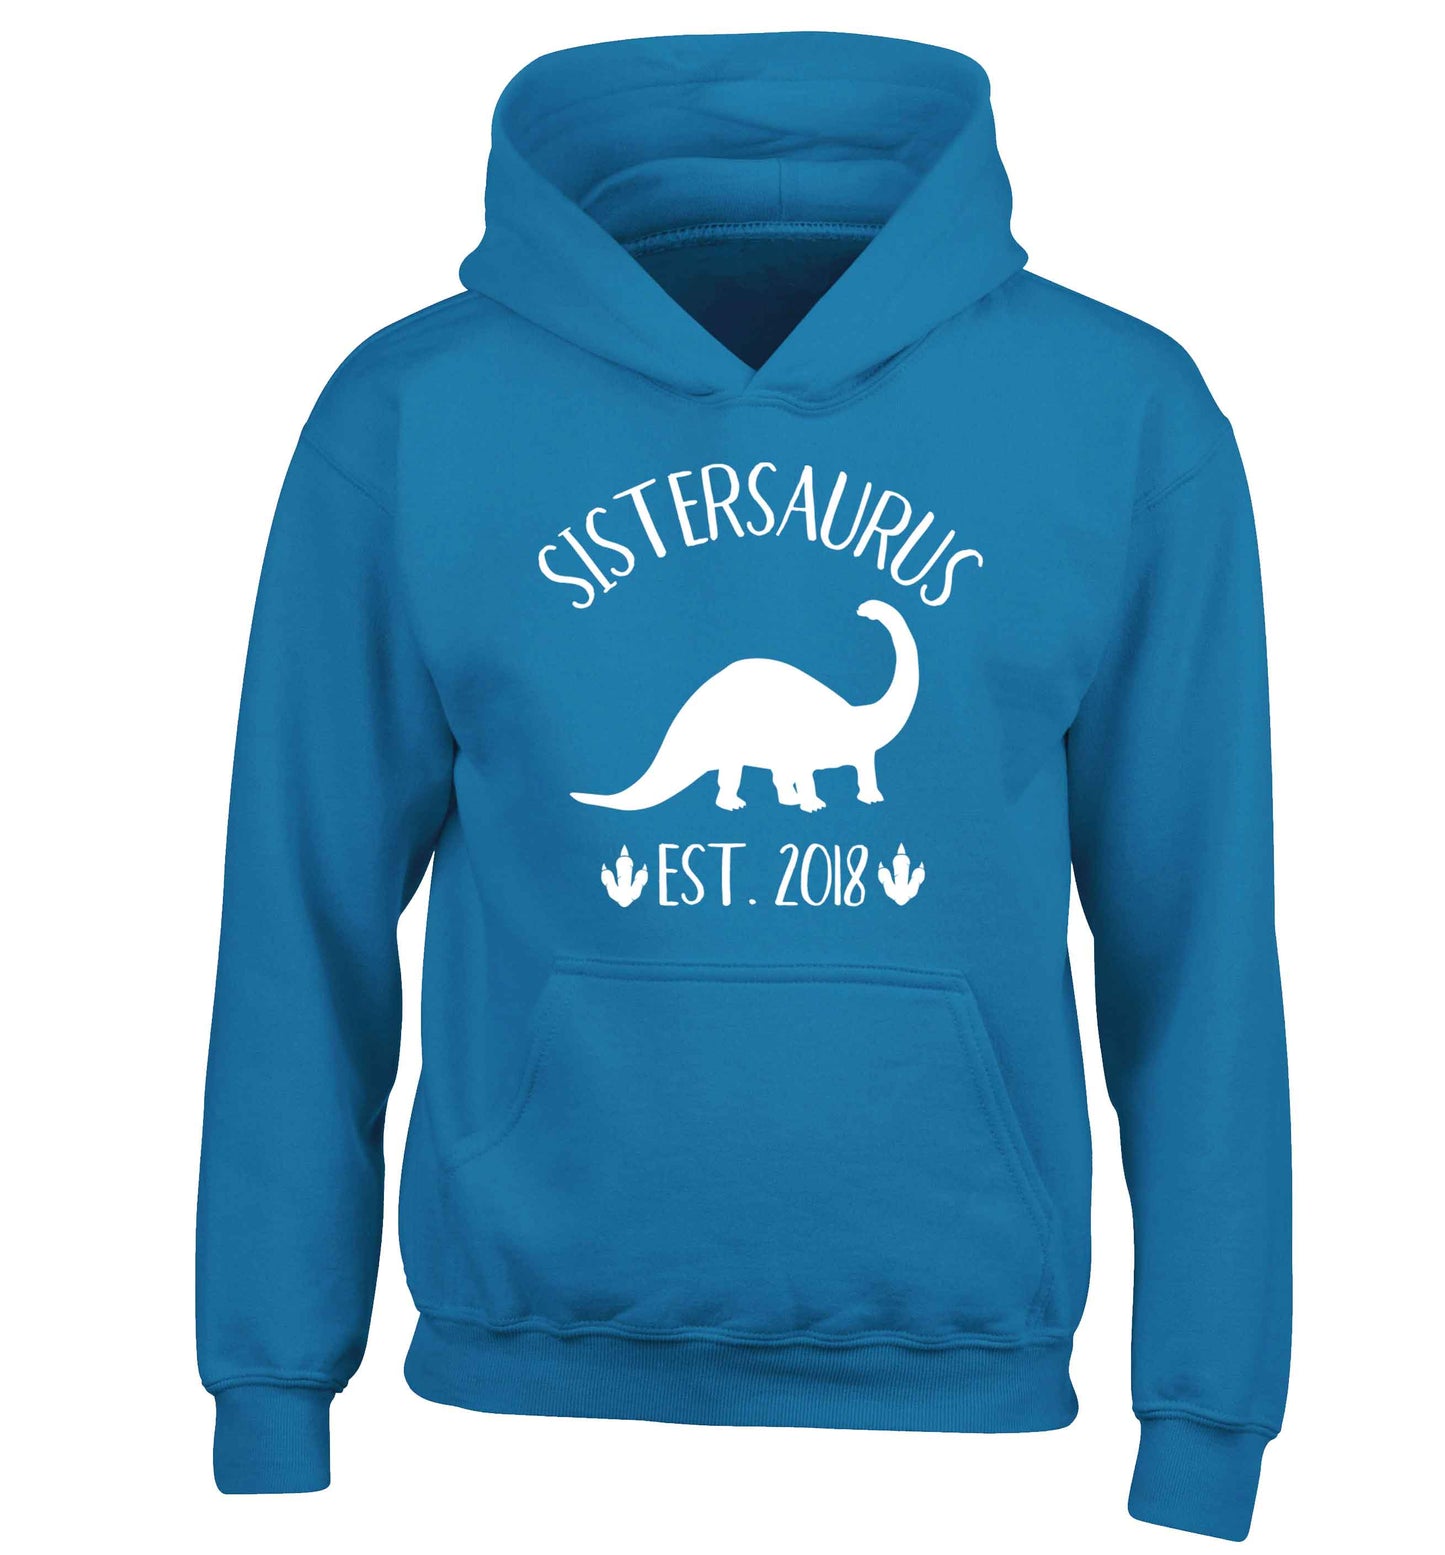 Personalised sistersaurus since (custom date) children's blue hoodie 12-13 Years